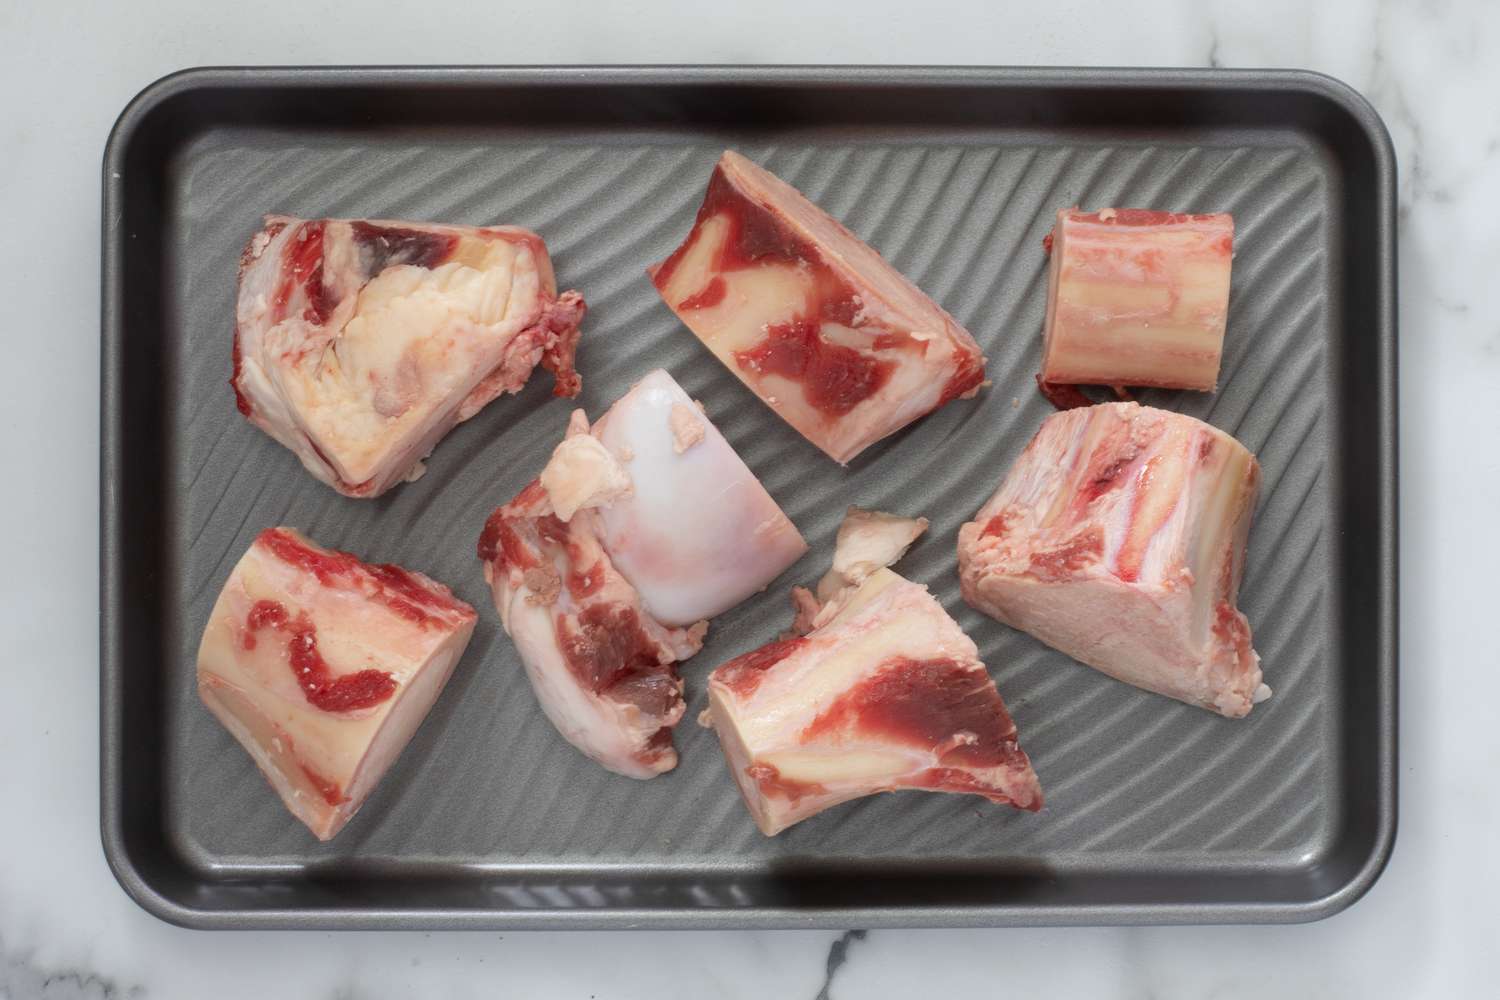 beef bones in the baking pan